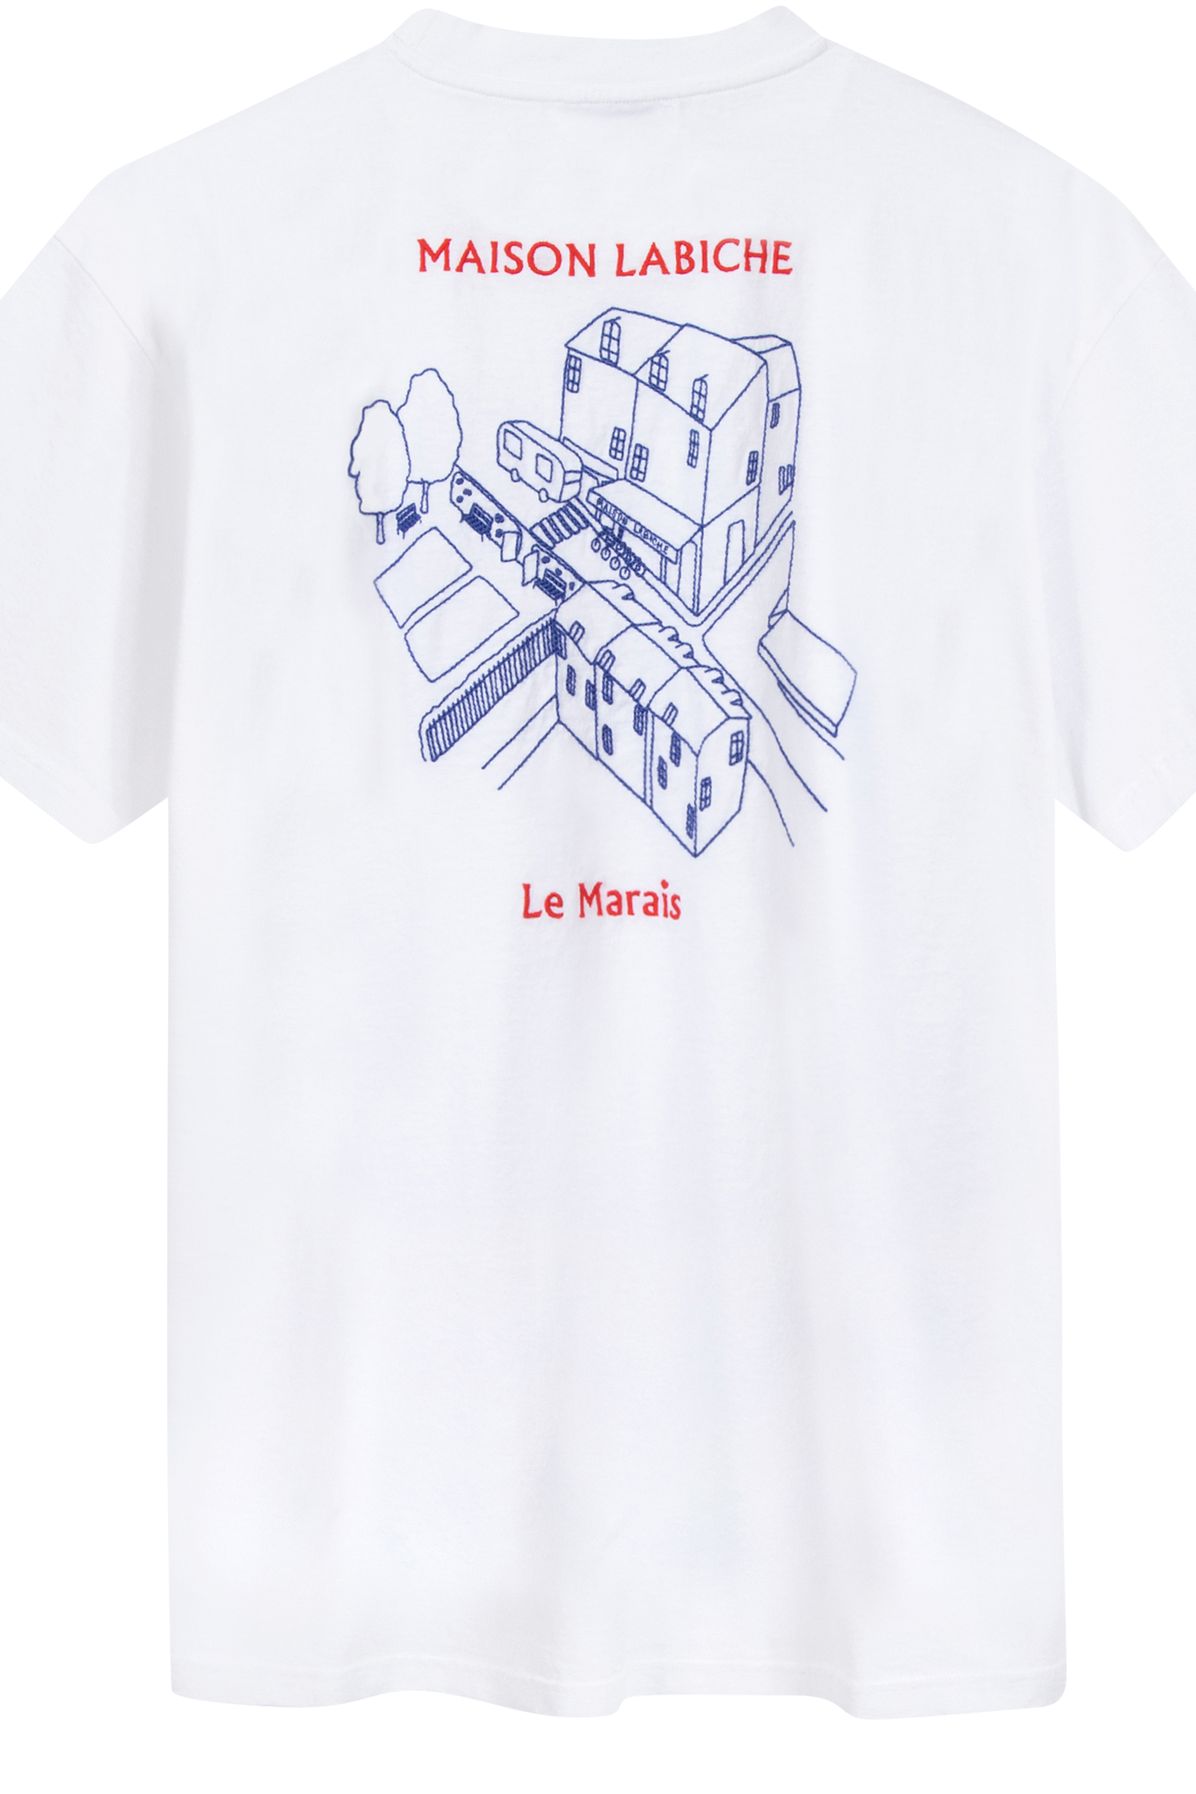 MAISON LABICHE vdt Patureau T-Shirt